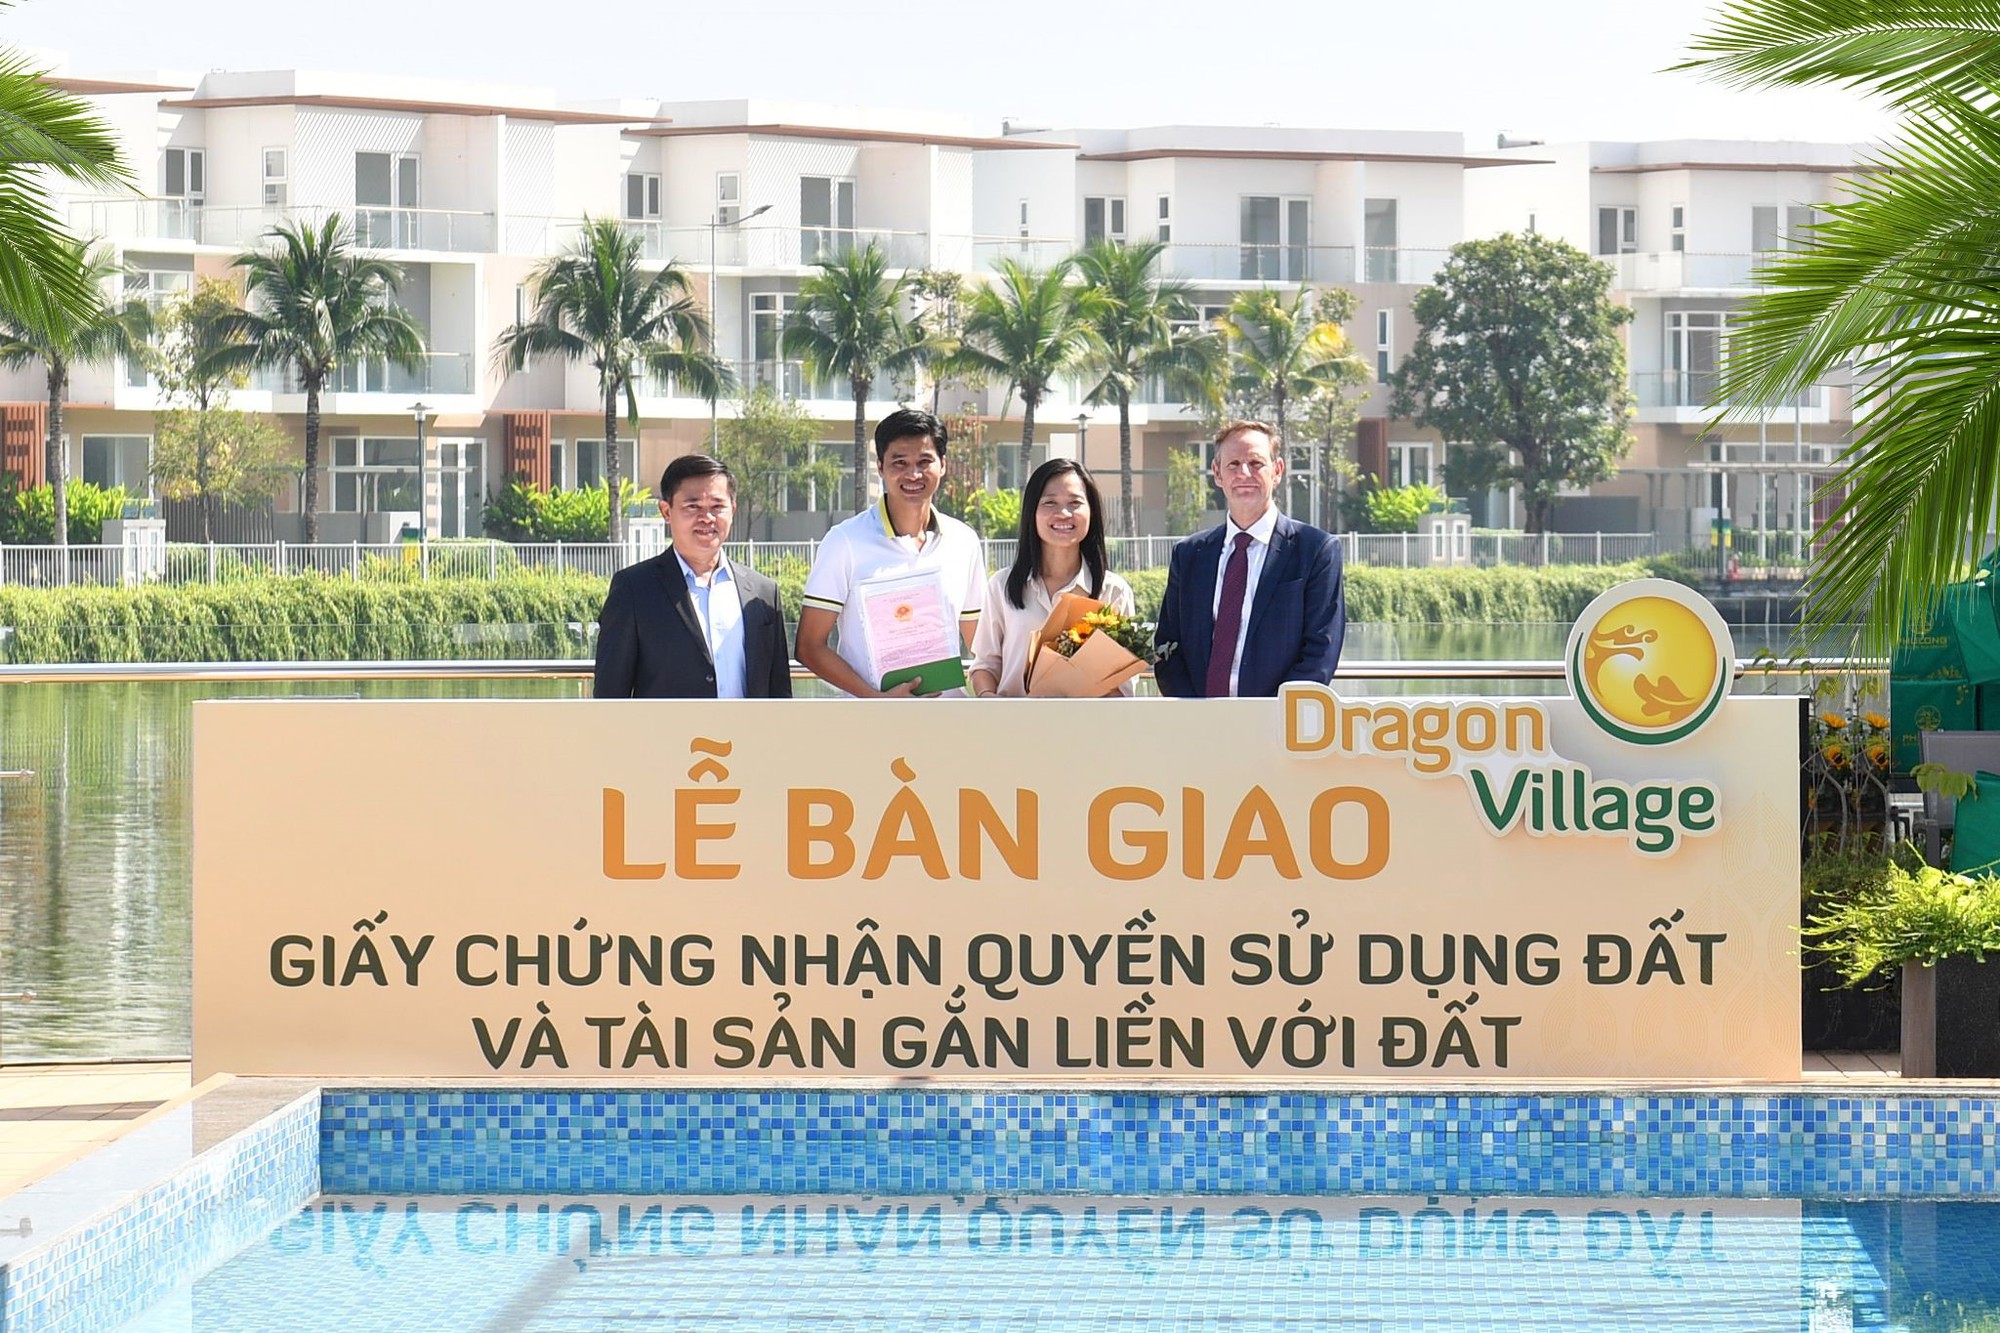 Phú Long chính thức trao sổ hồng cho cư dân Dragon Village và Dragon Parc - Ảnh 1.